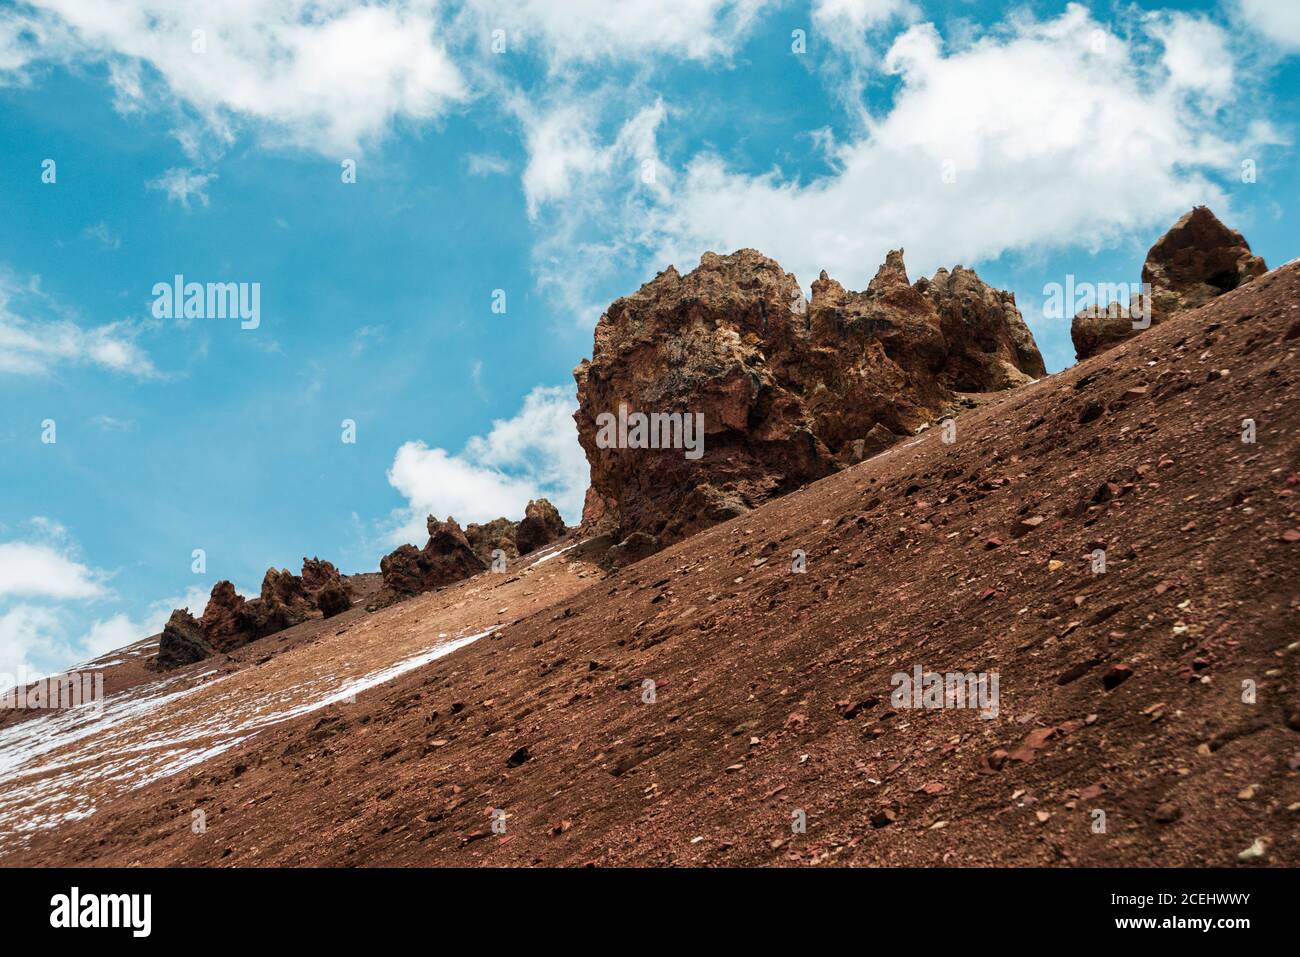 formations volcaniques rocheuses sur une pente de montagne abrupte Banque D'Images